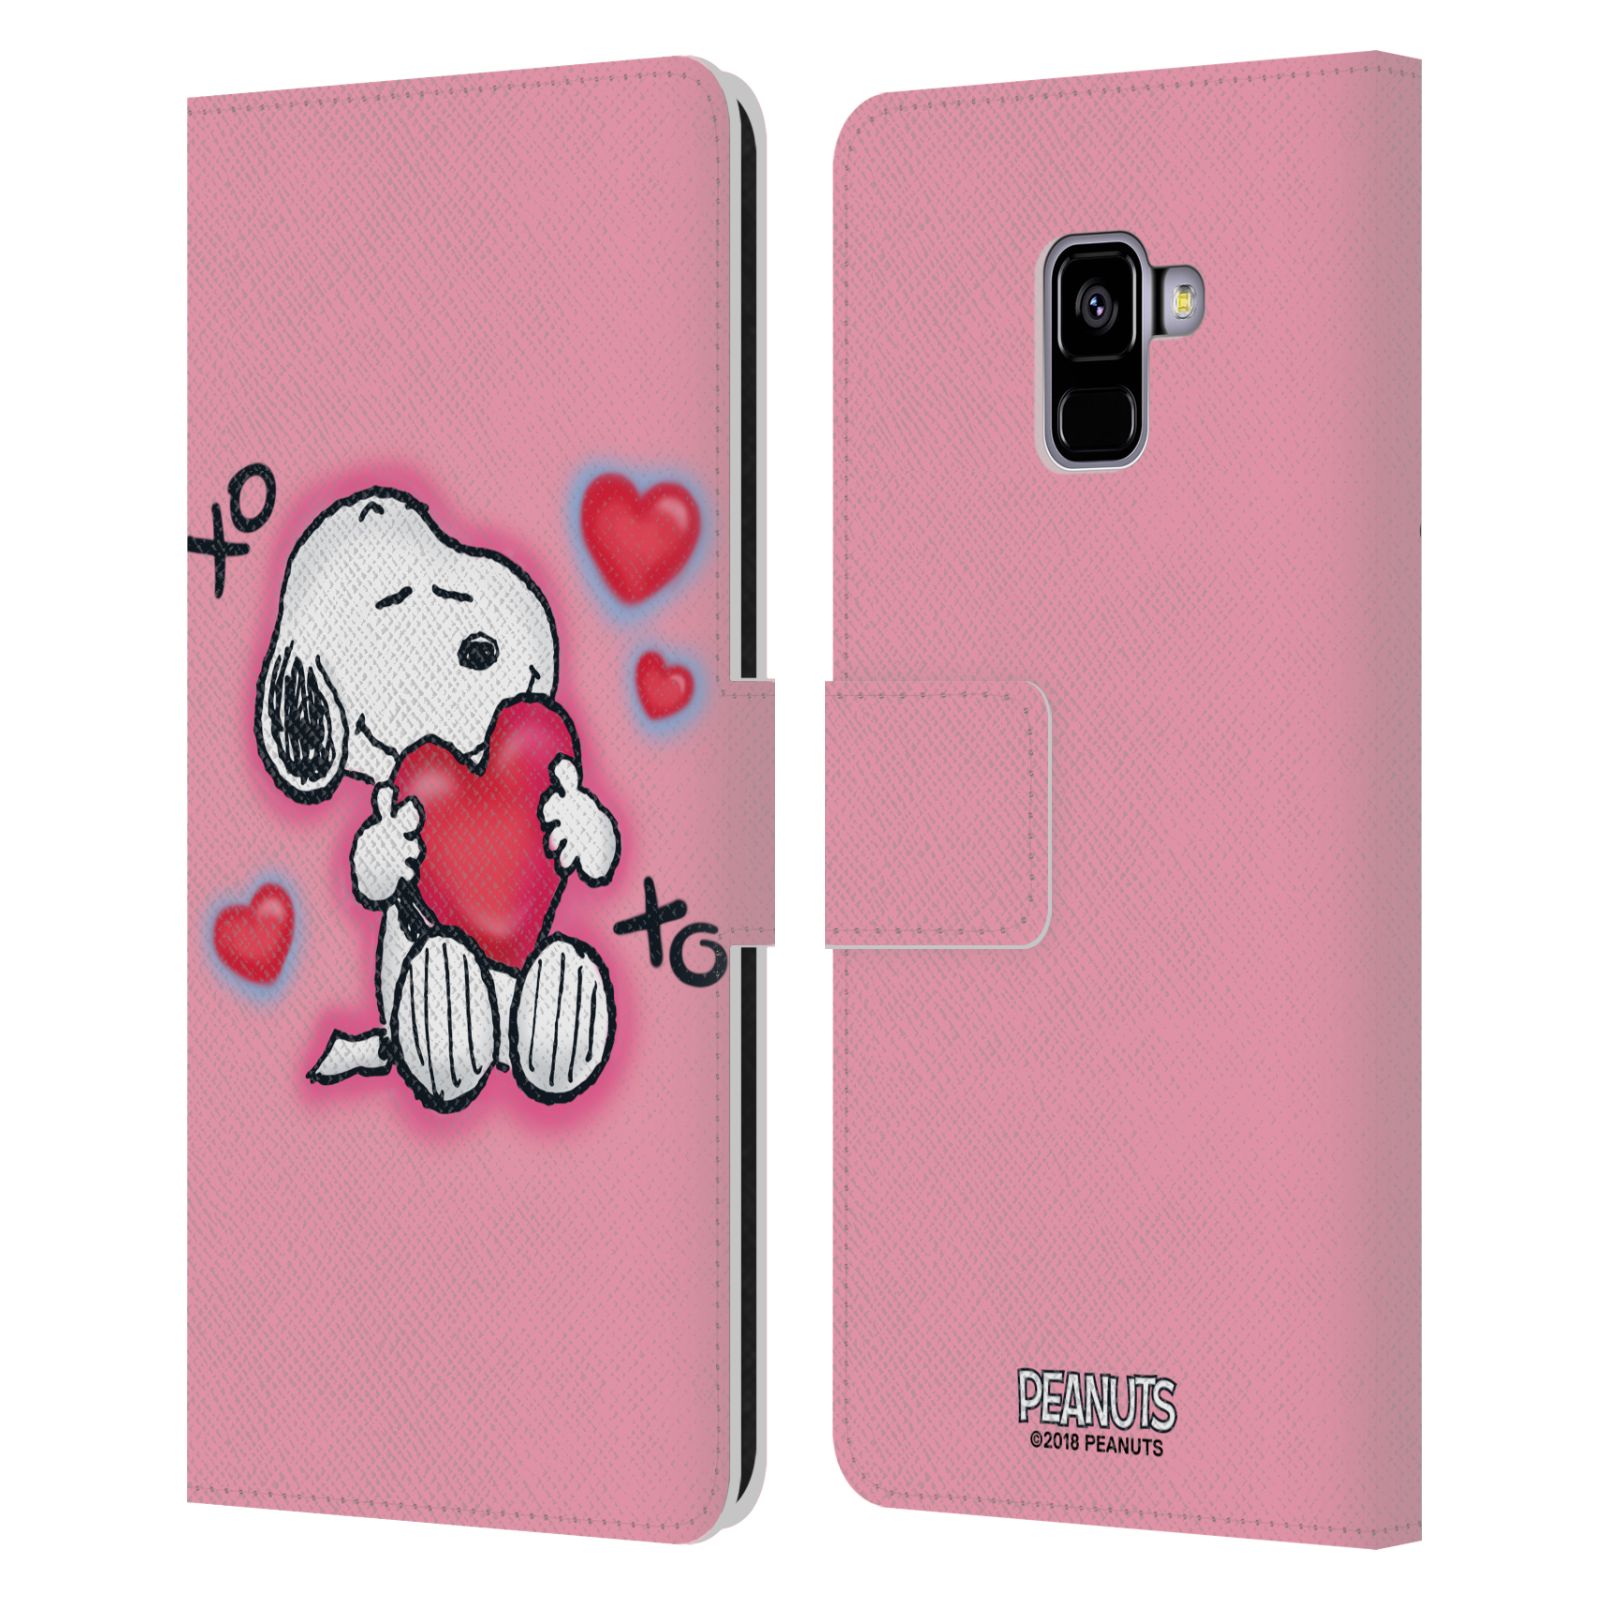 Pouzdro na mobil Samsung Galaxy A8+ 2018 - HEAD CASE - Peanuts - Snoopy a srdíčka